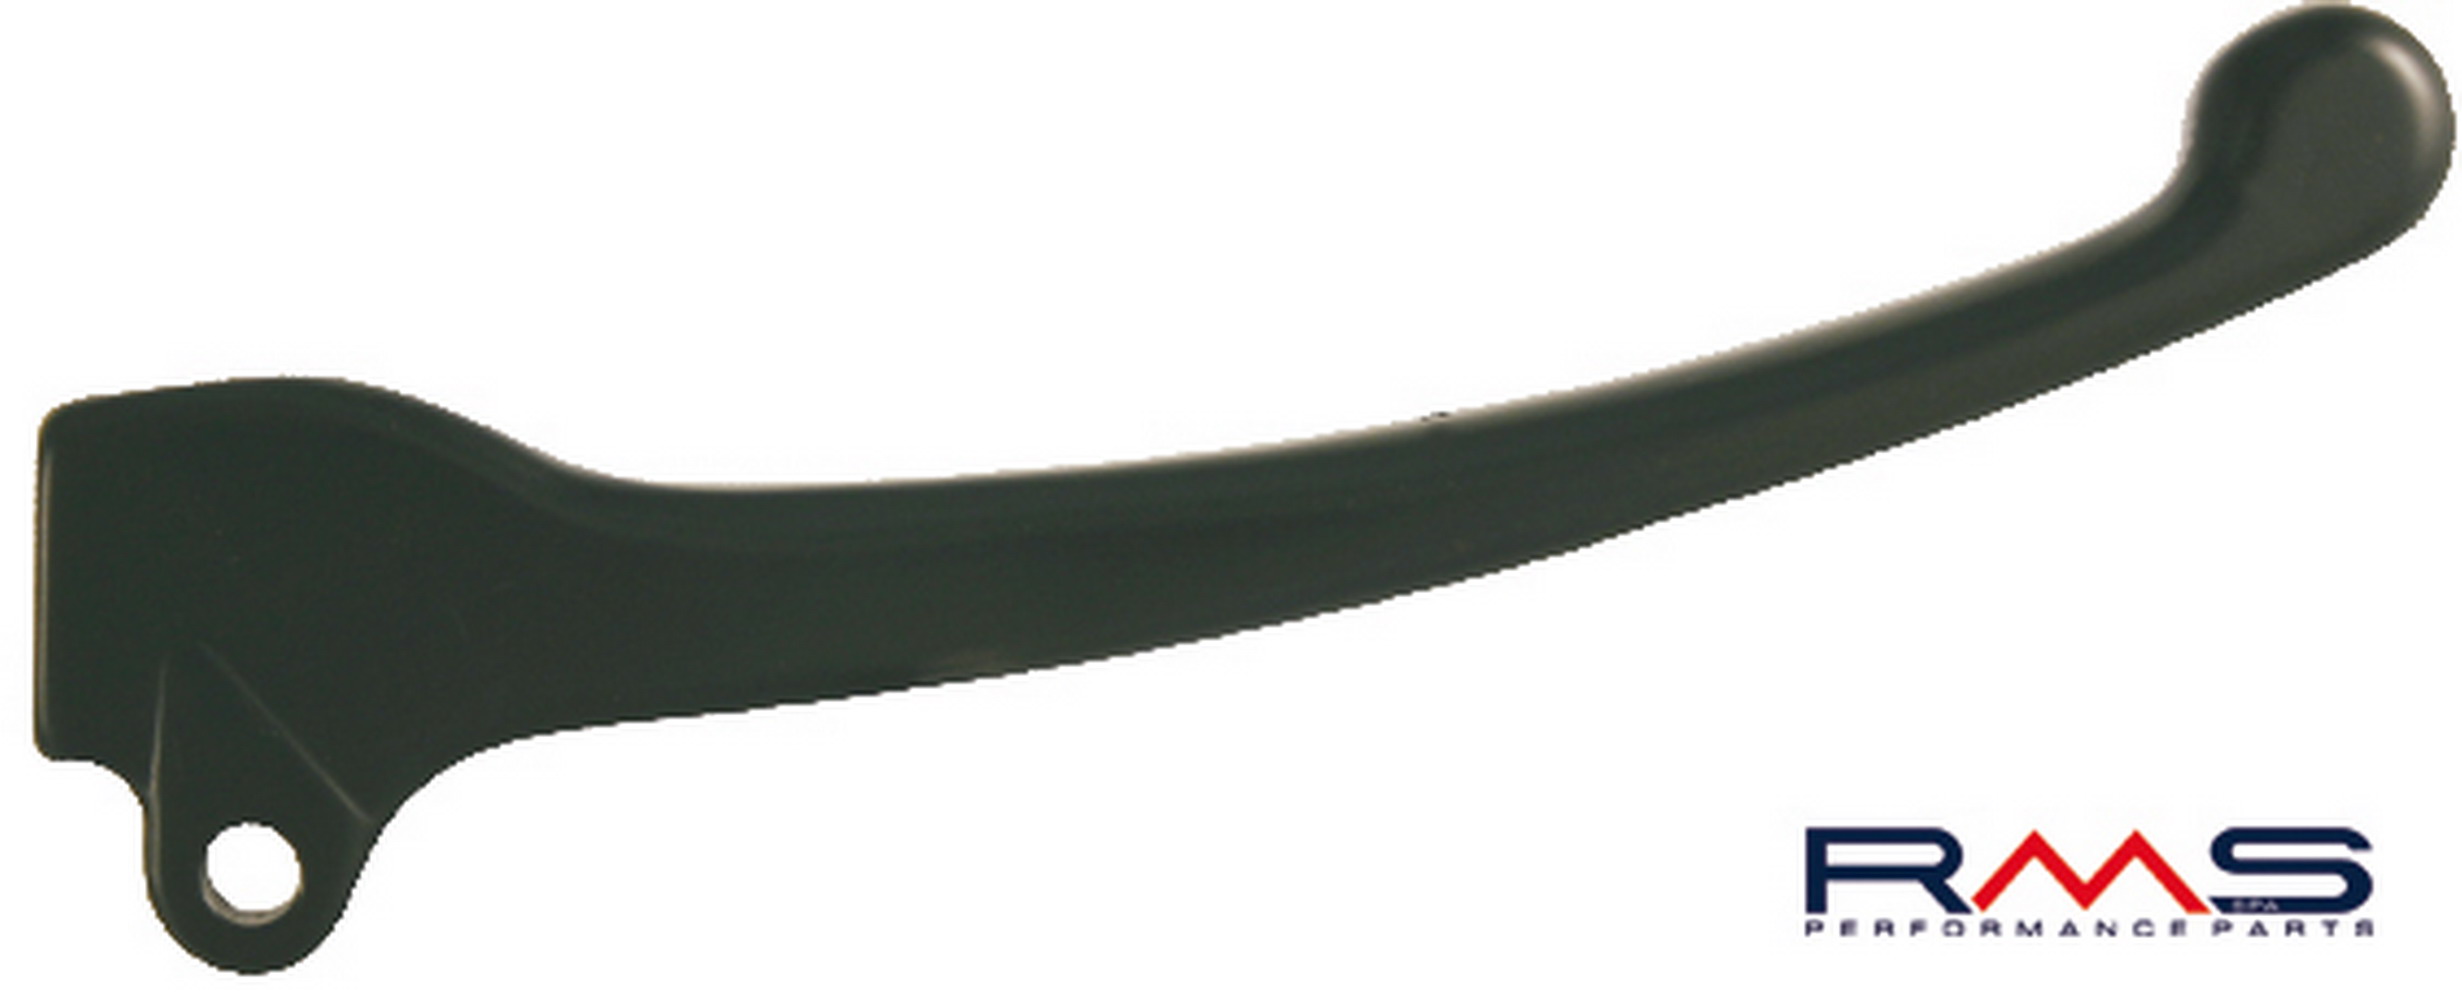 Obrázek produktu Páčka RMS 184120091 pravý černý